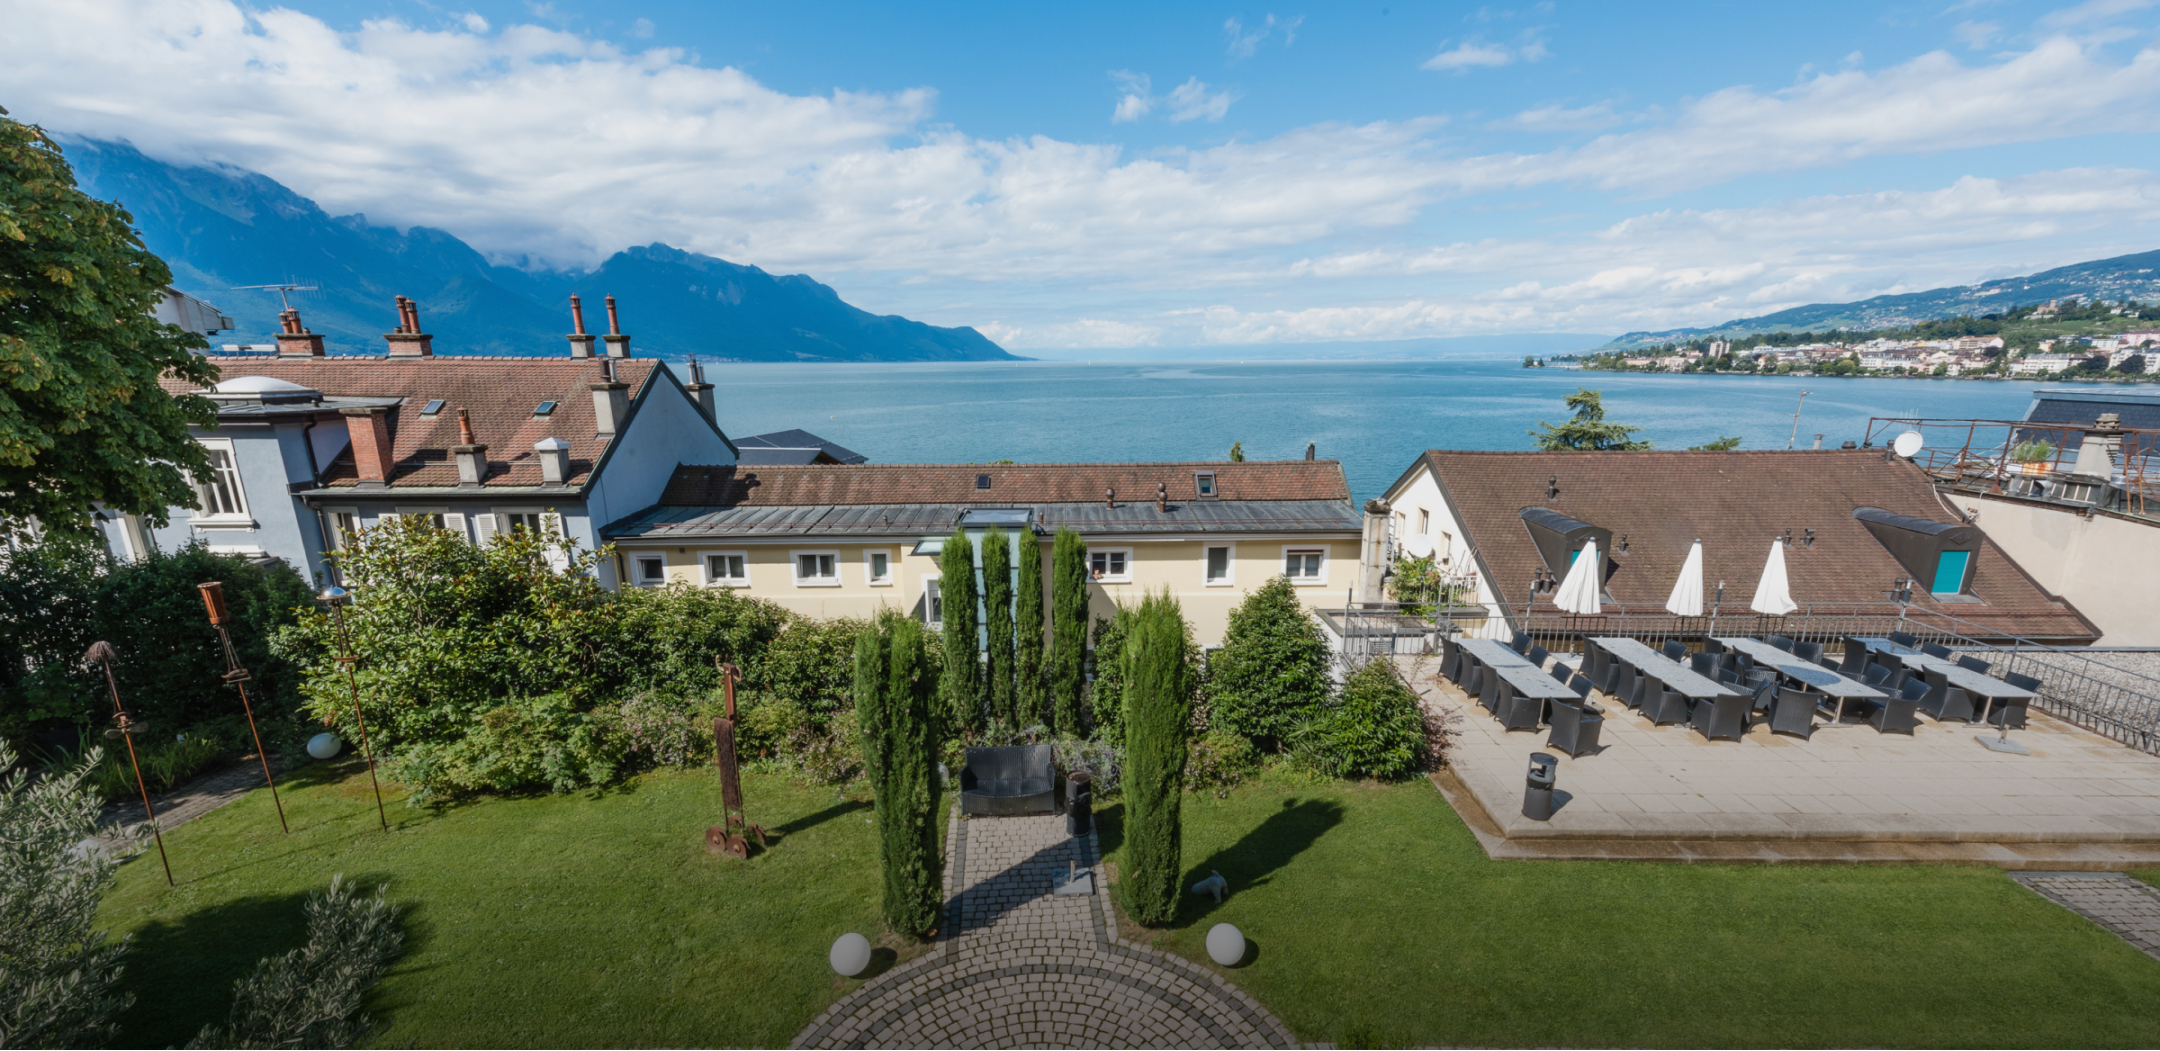 Hotel Institute Montreux. Visit us